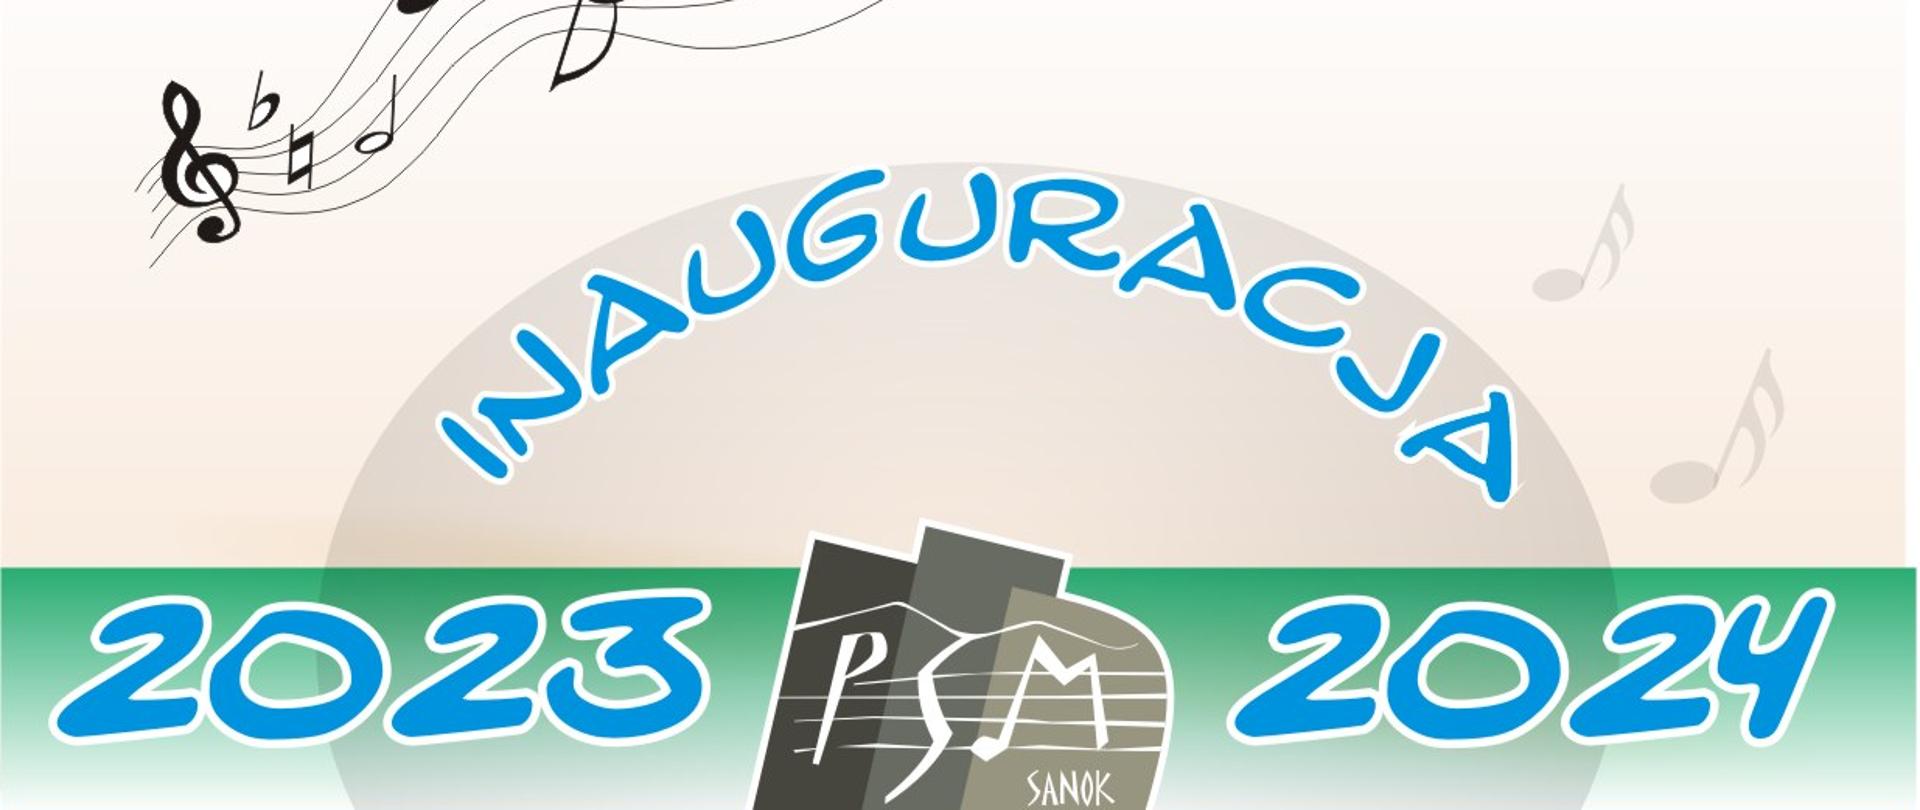 Plakat Inauguracji Roku Szkolnego 2023-2024 Państwowej Szkoły Muzycznej I i II st. w Sanoku, niebieski i czerwone litery, w tle szare nuty i logo szkoły